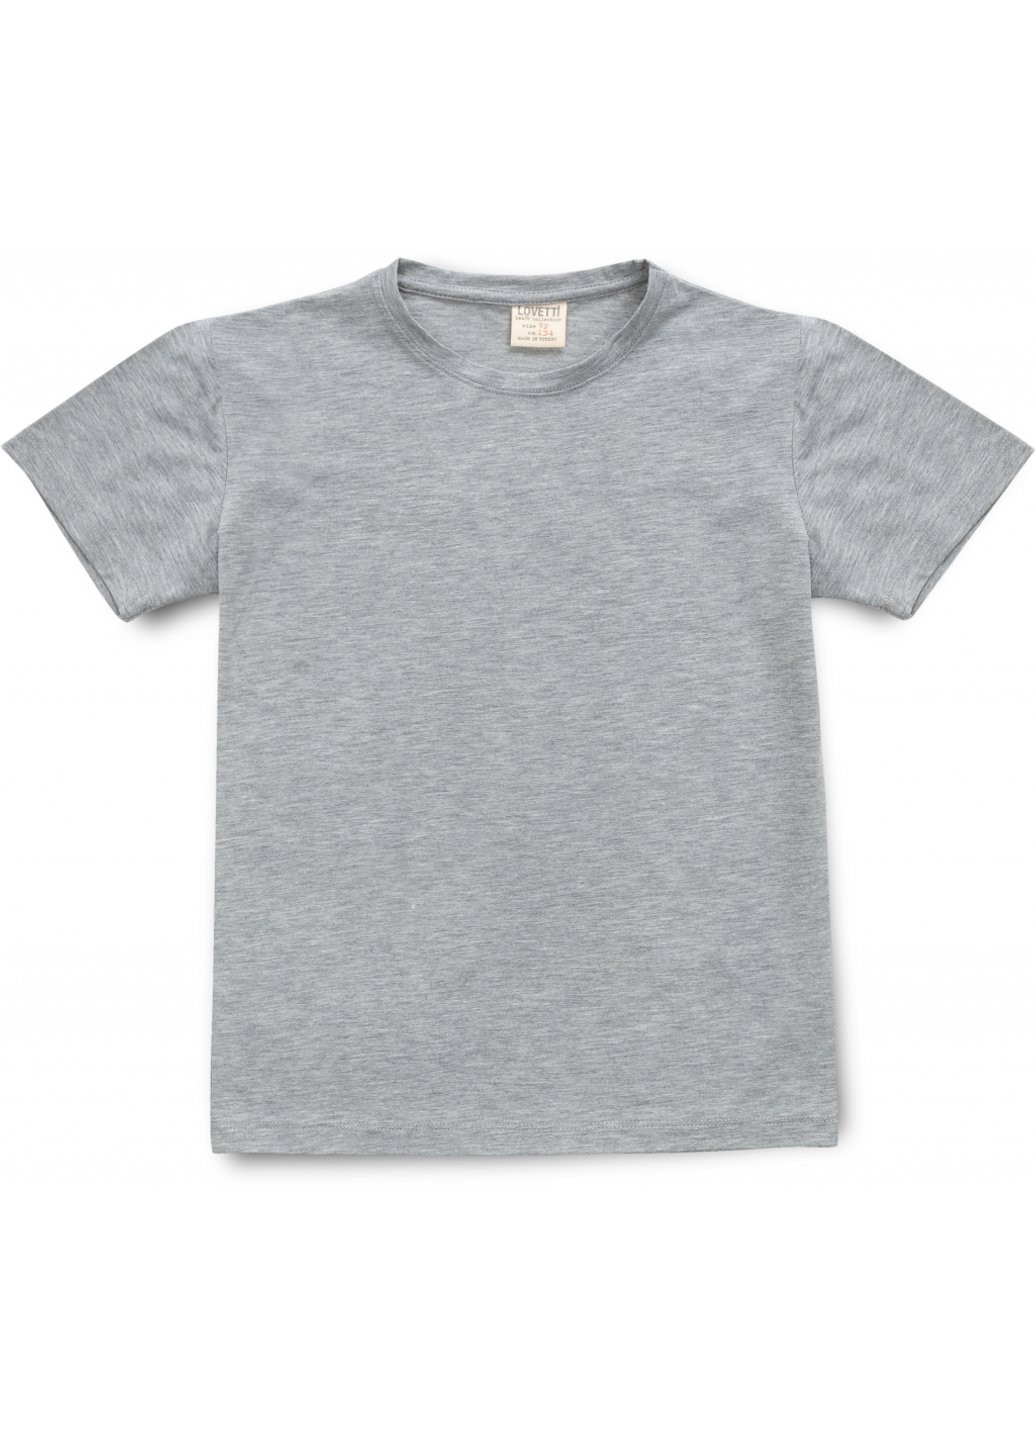 Комбинированная футболка детская базовая (3031-146-gray) Lovetti